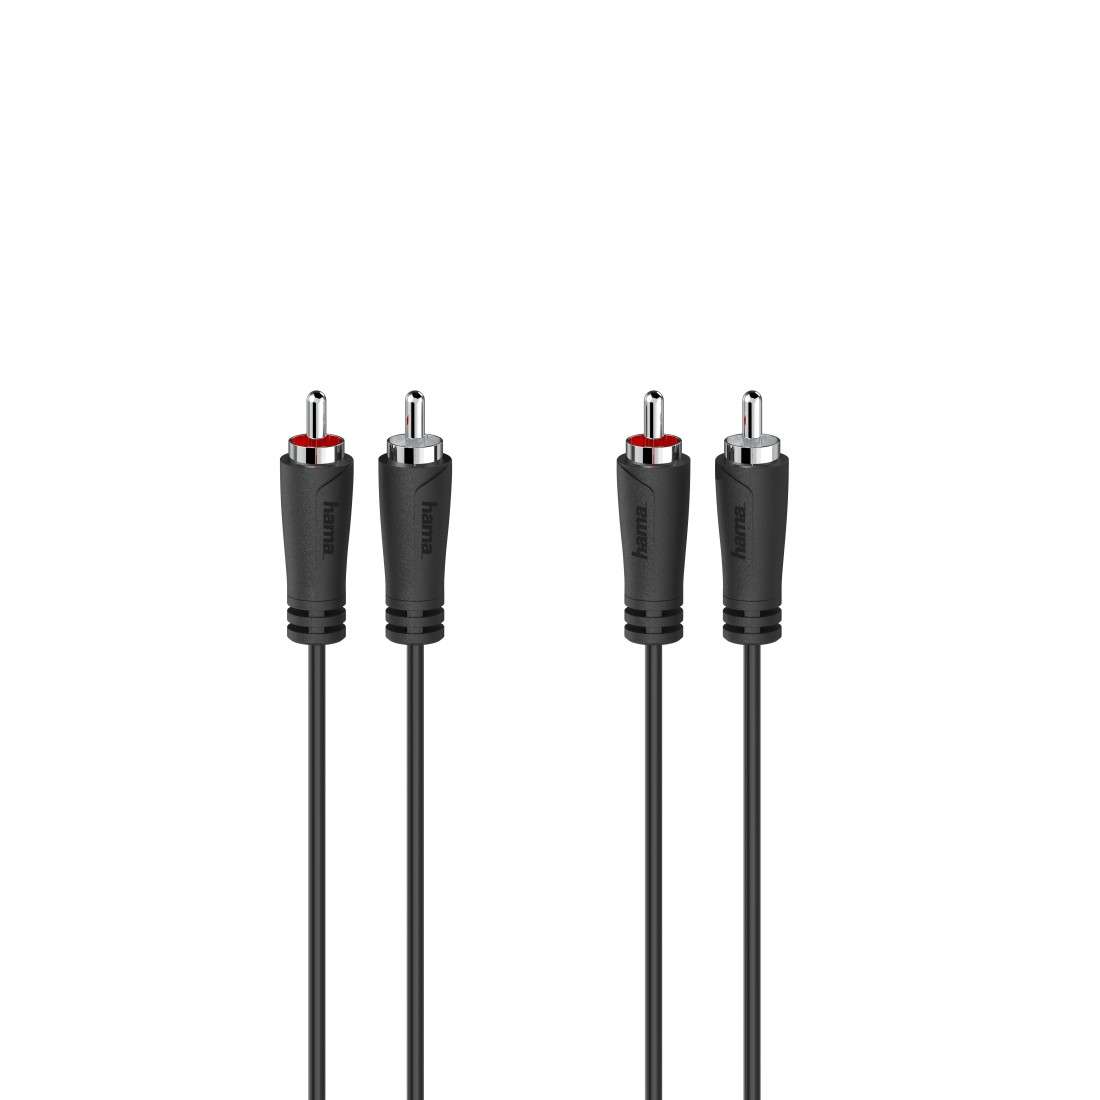 HAMA Audio-Kabel, 2 Cinch-Stecker - 2 Cinch-Stecker, 3,0 m